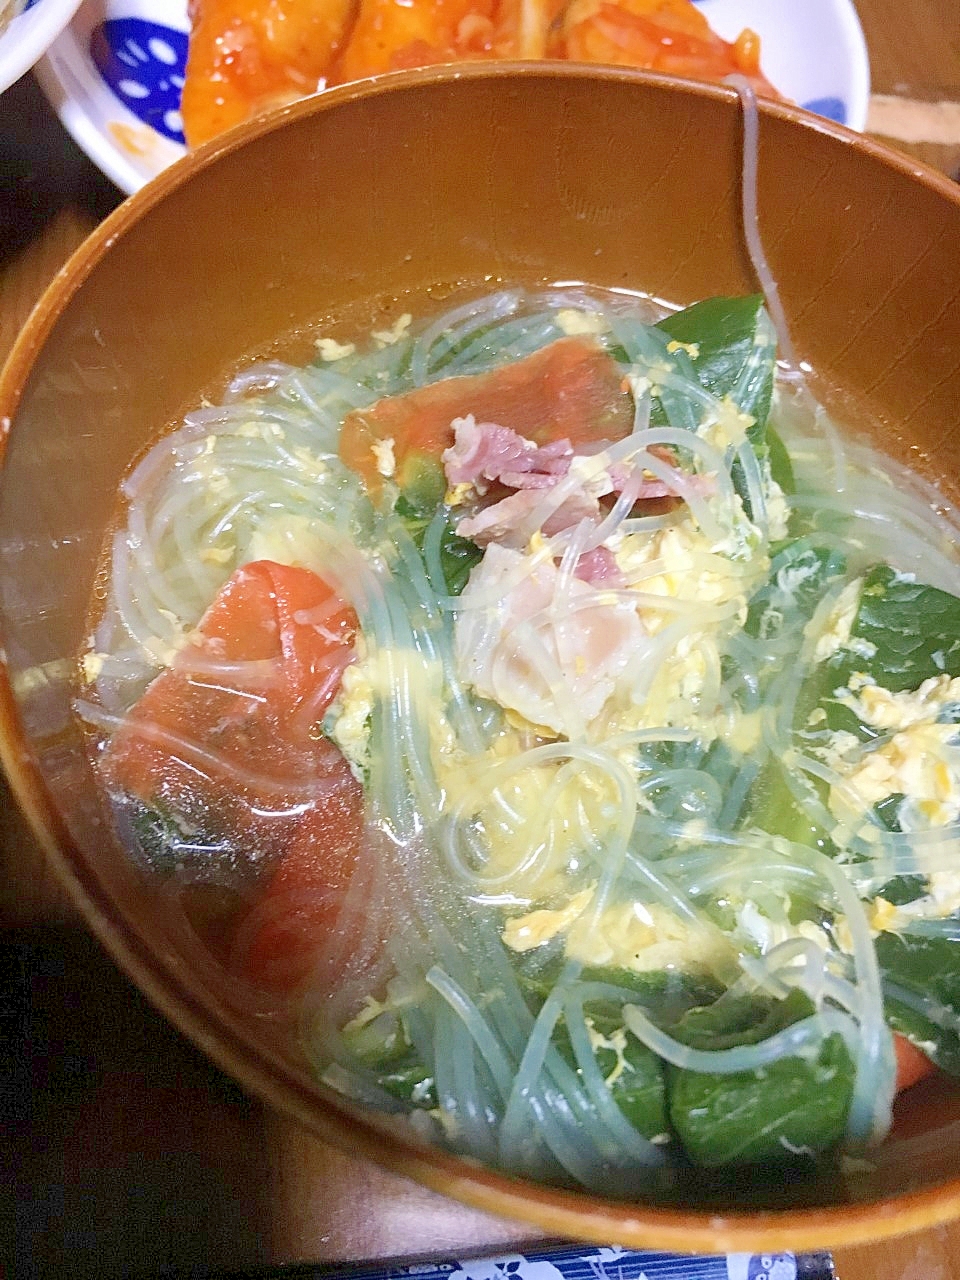 ベーコンと小松菜の春雨スープ